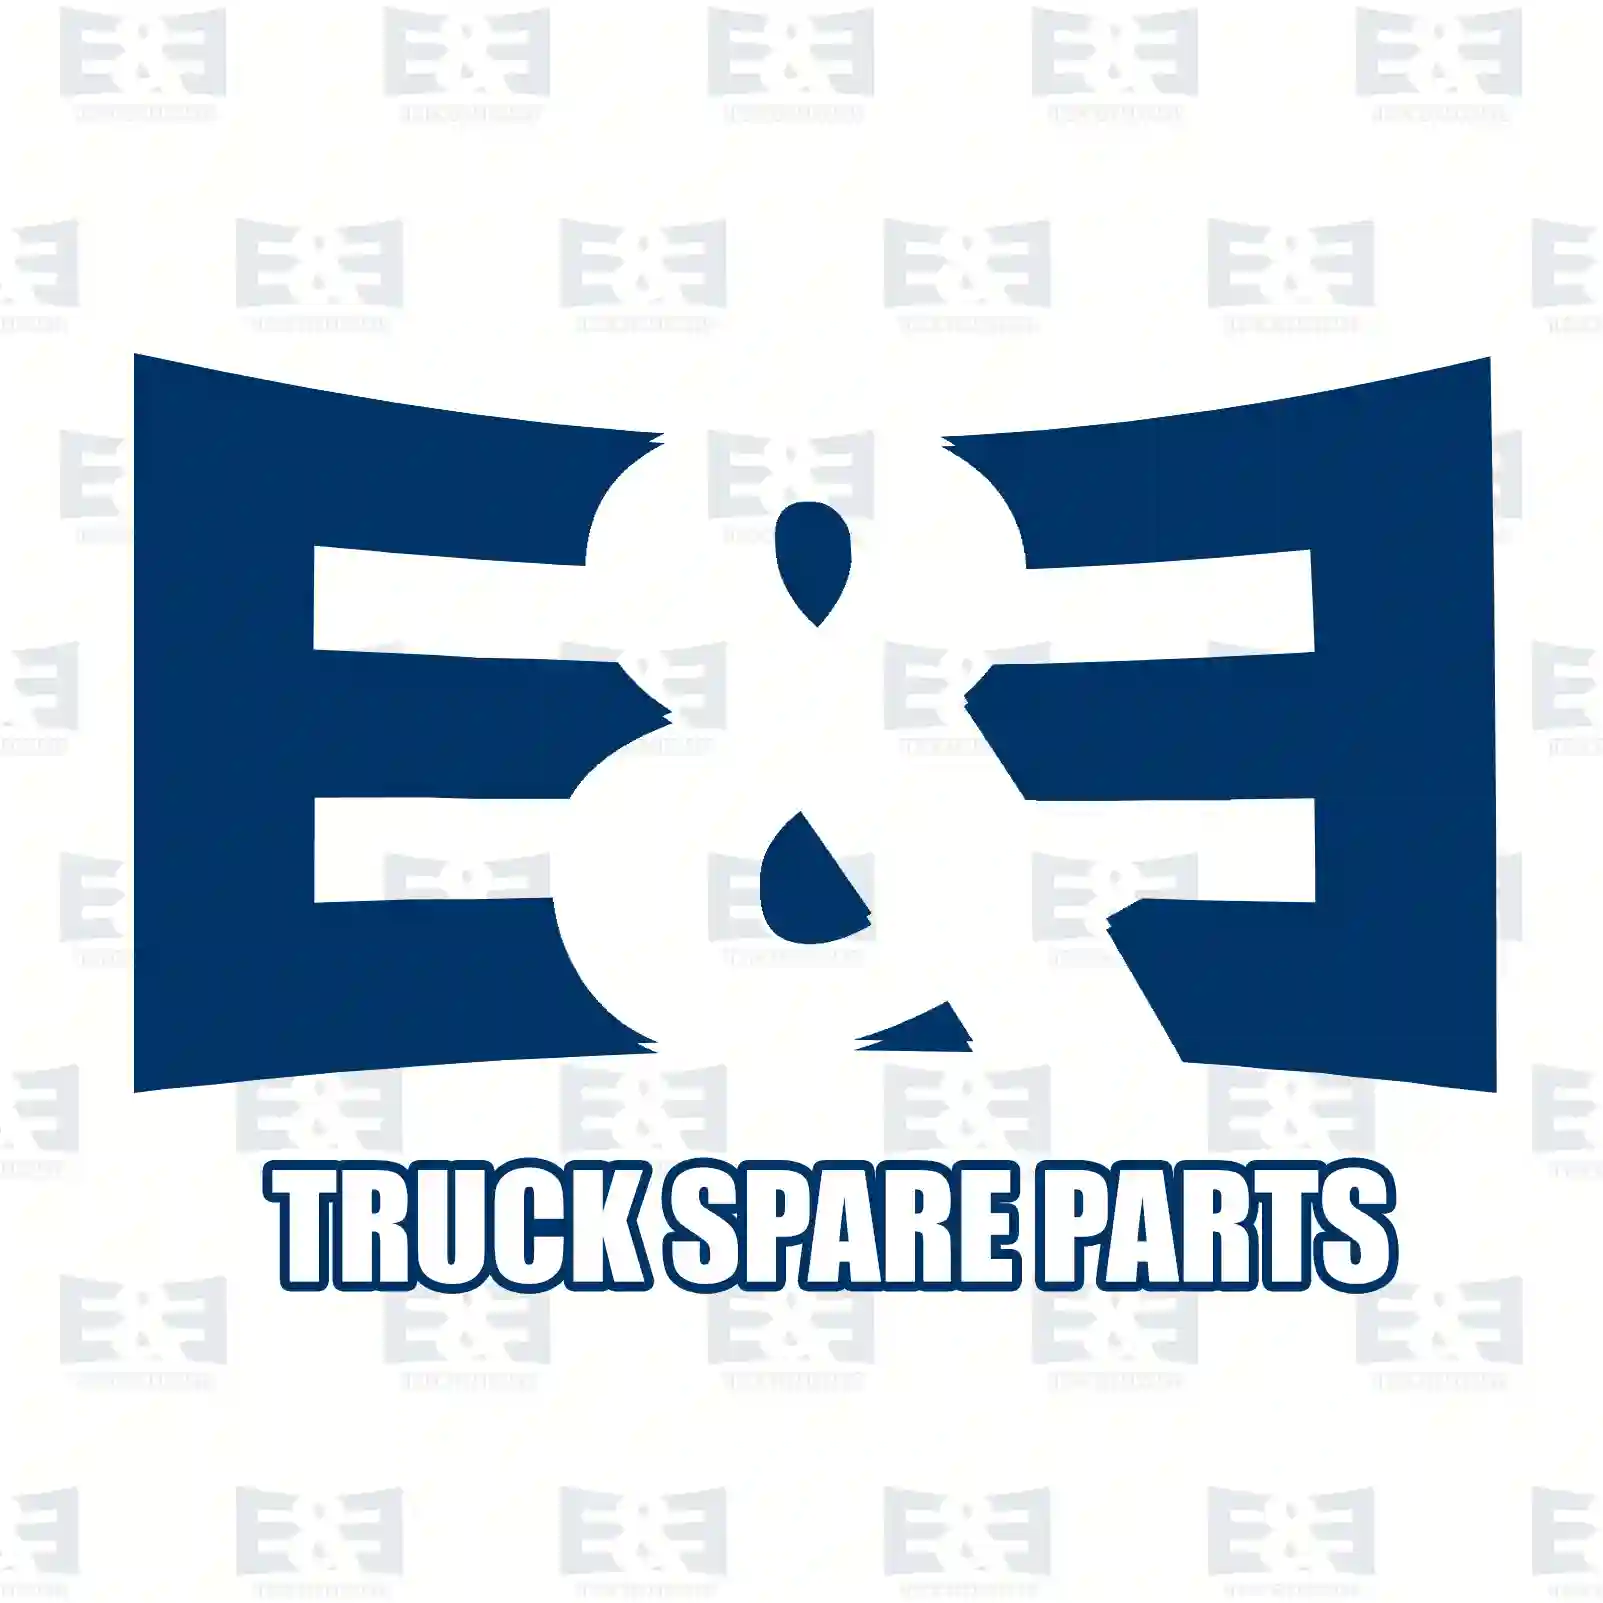 Air dryer cartridge, 2E2296330, 7422991713, 22991 ||  2E2296330 E&E Truck Spare Parts | Truck Spare Parts, Auotomotive Spare Parts Air dryer cartridge, 2E2296330, 7422991713, 22991 ||  2E2296330 E&E Truck Spare Parts | Truck Spare Parts, Auotomotive Spare Parts